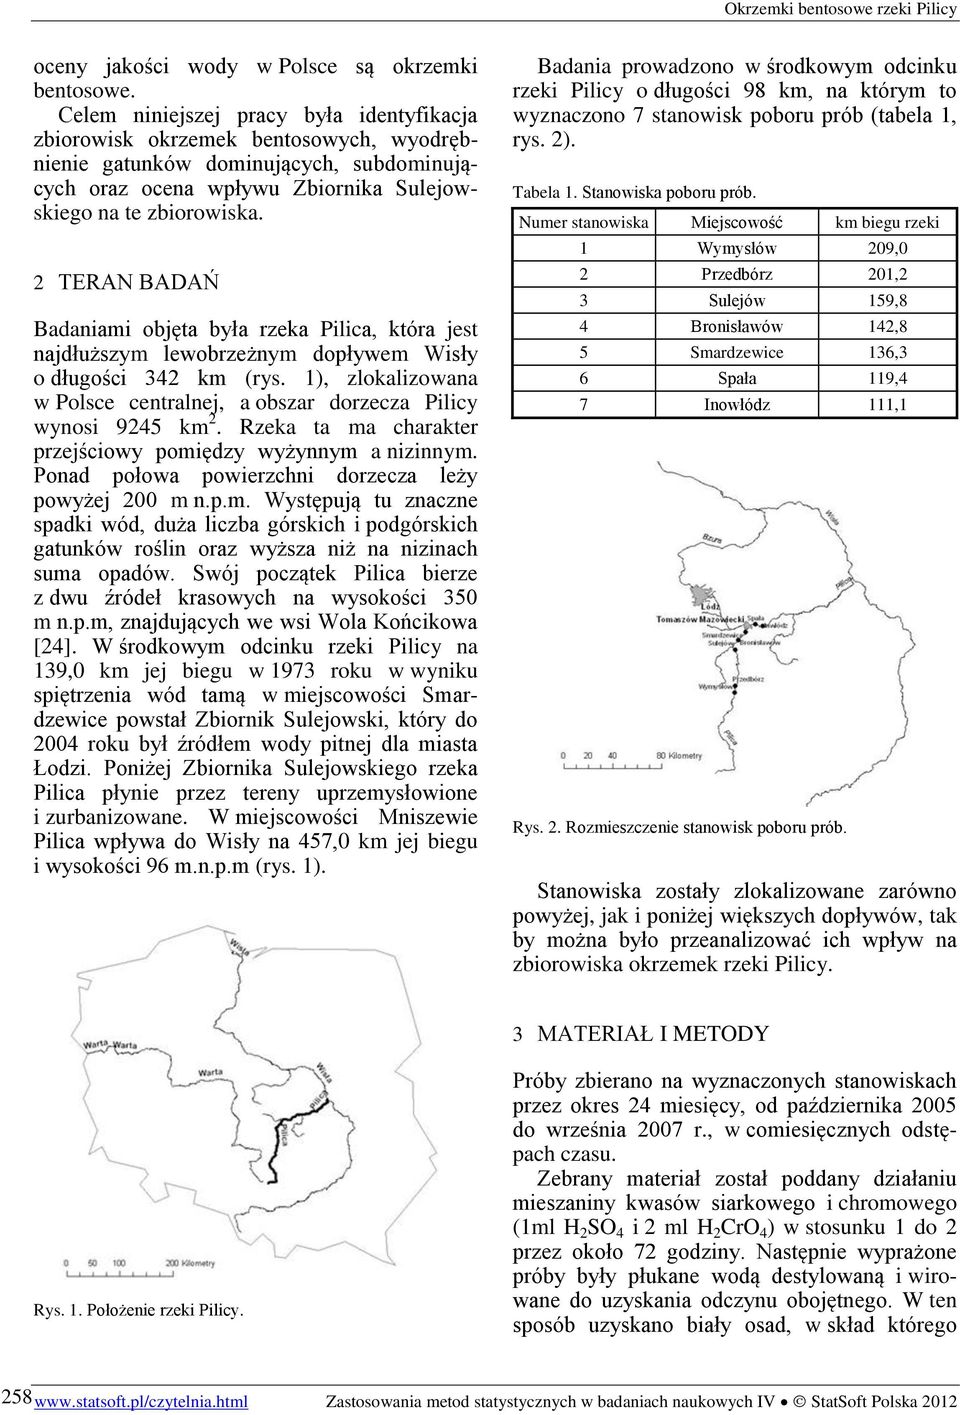 2 TERAN BADAŃ Badaniami objęta była rzeka Pilica, która jest najdłuższym lewobrzeżnym dopływem Wisły o długości 342 km (rys.